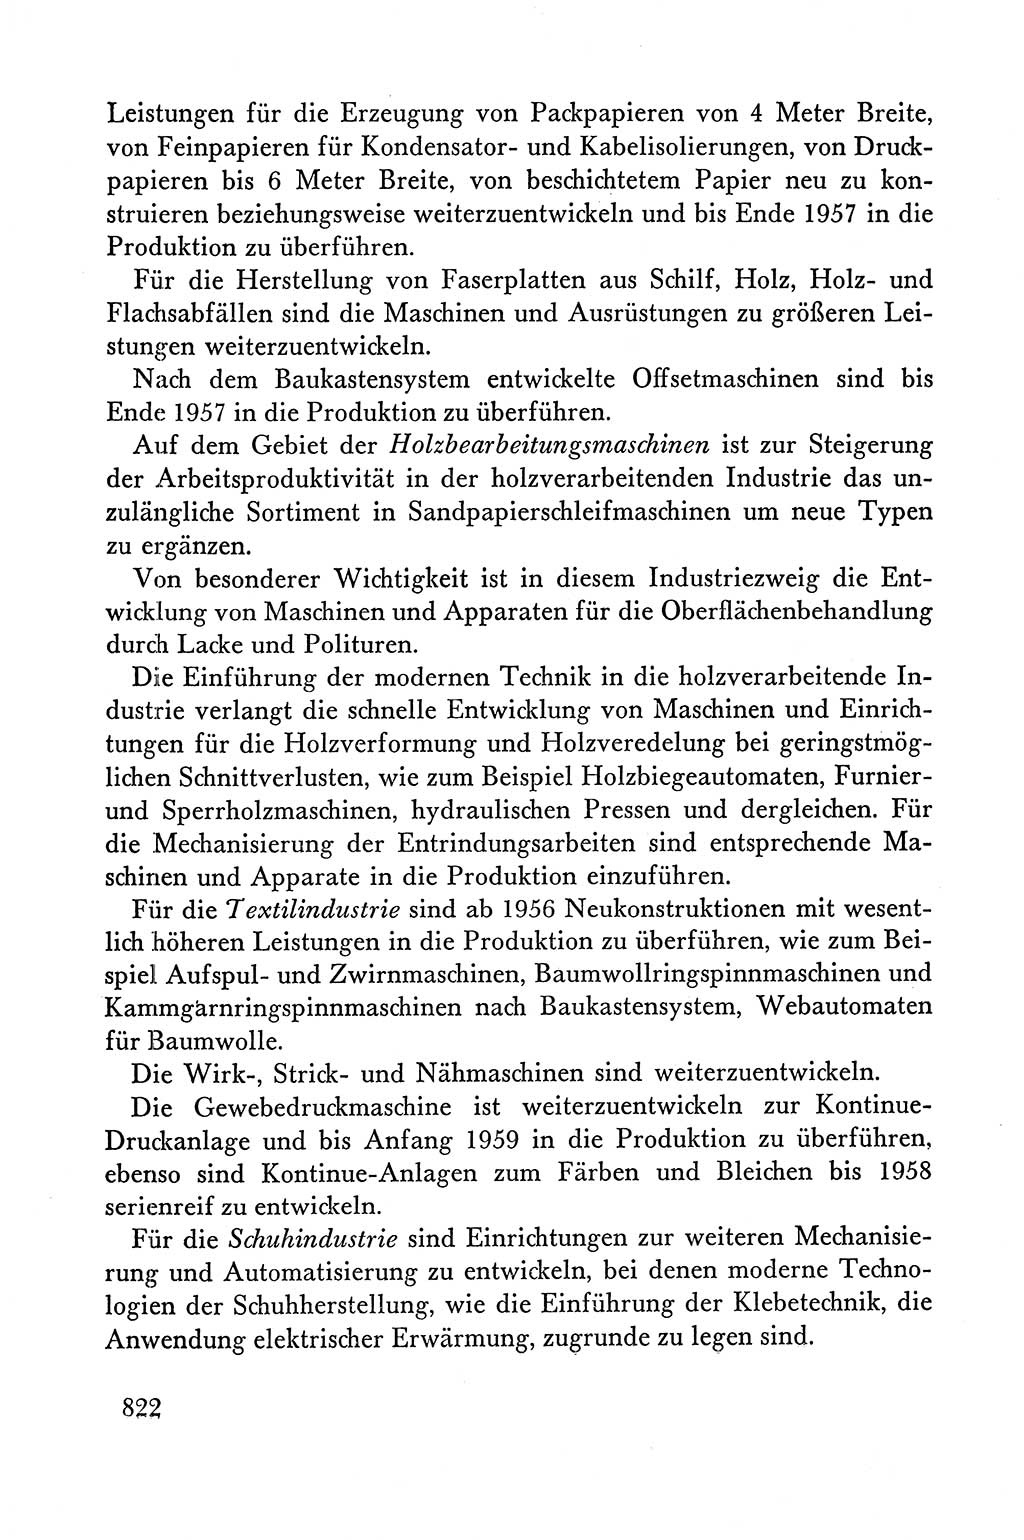 Dokumente der Sozialistischen Einheitspartei Deutschlands (SED) [Deutsche Demokratische Republik (DDR)] 1958-1959, Seite 822 (Dok. SED DDR 1958-1959, S. 822)